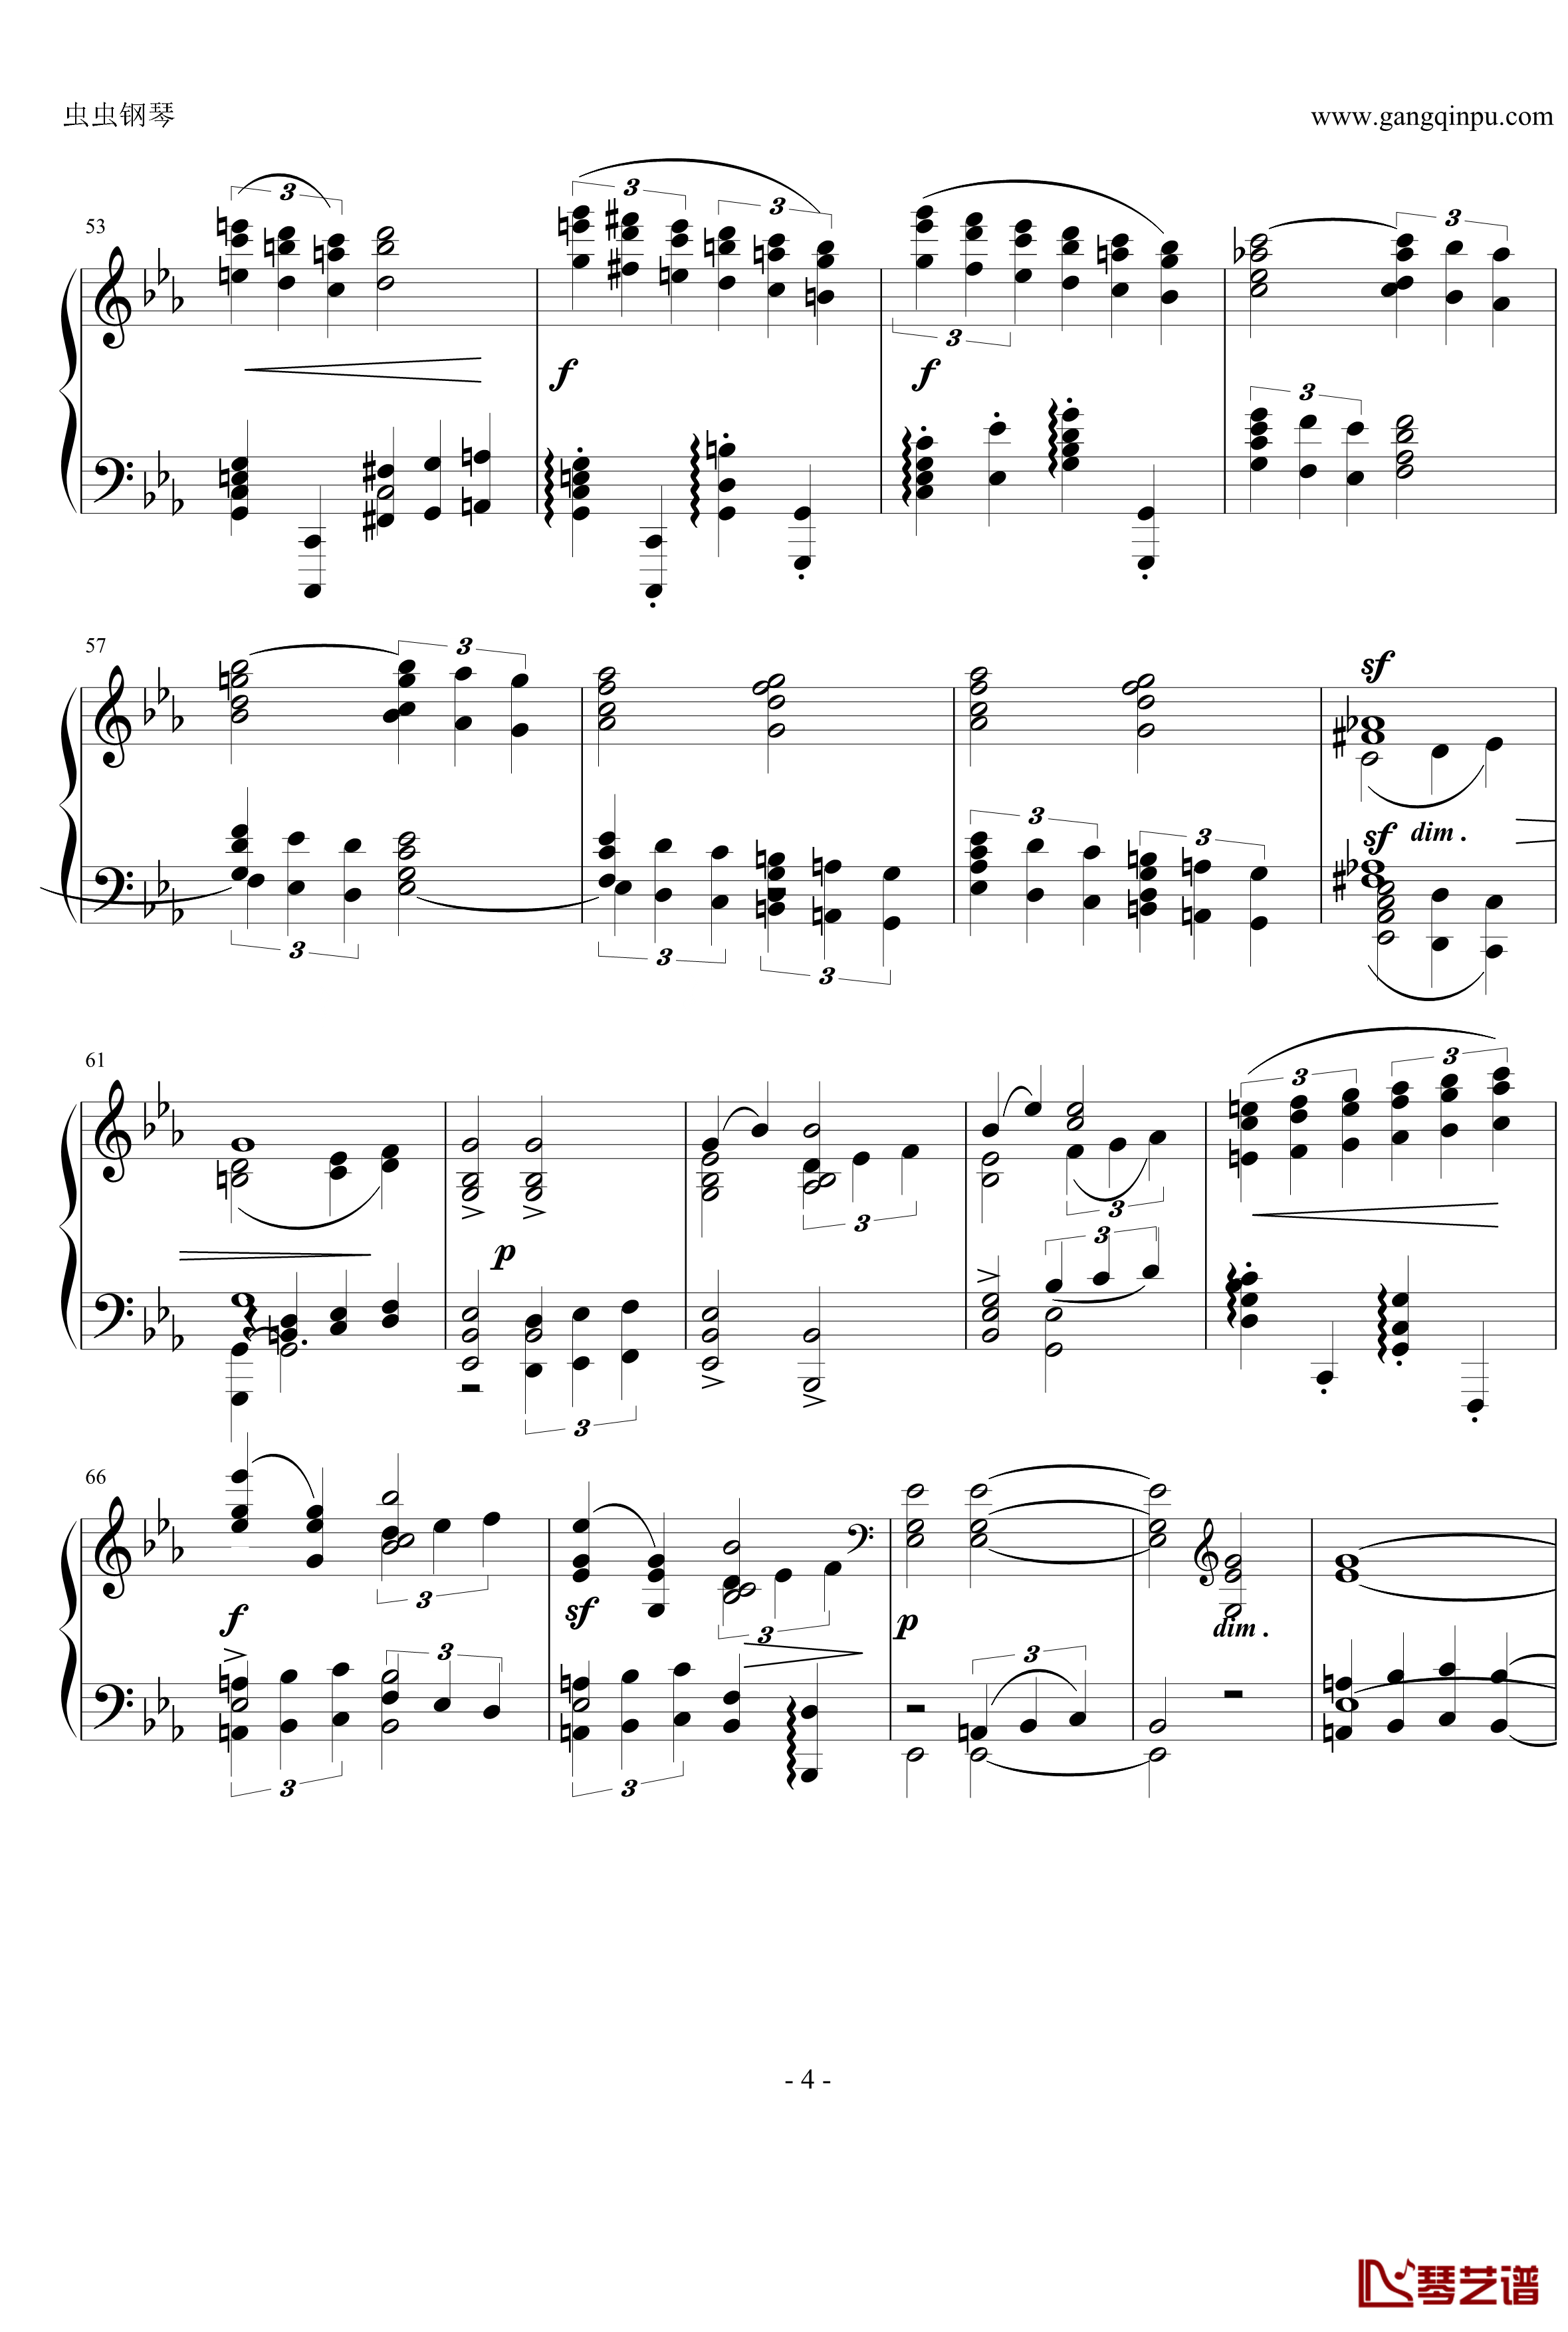 随想曲钢琴谱-勃拉姆斯Op.116 No.3-Brahms